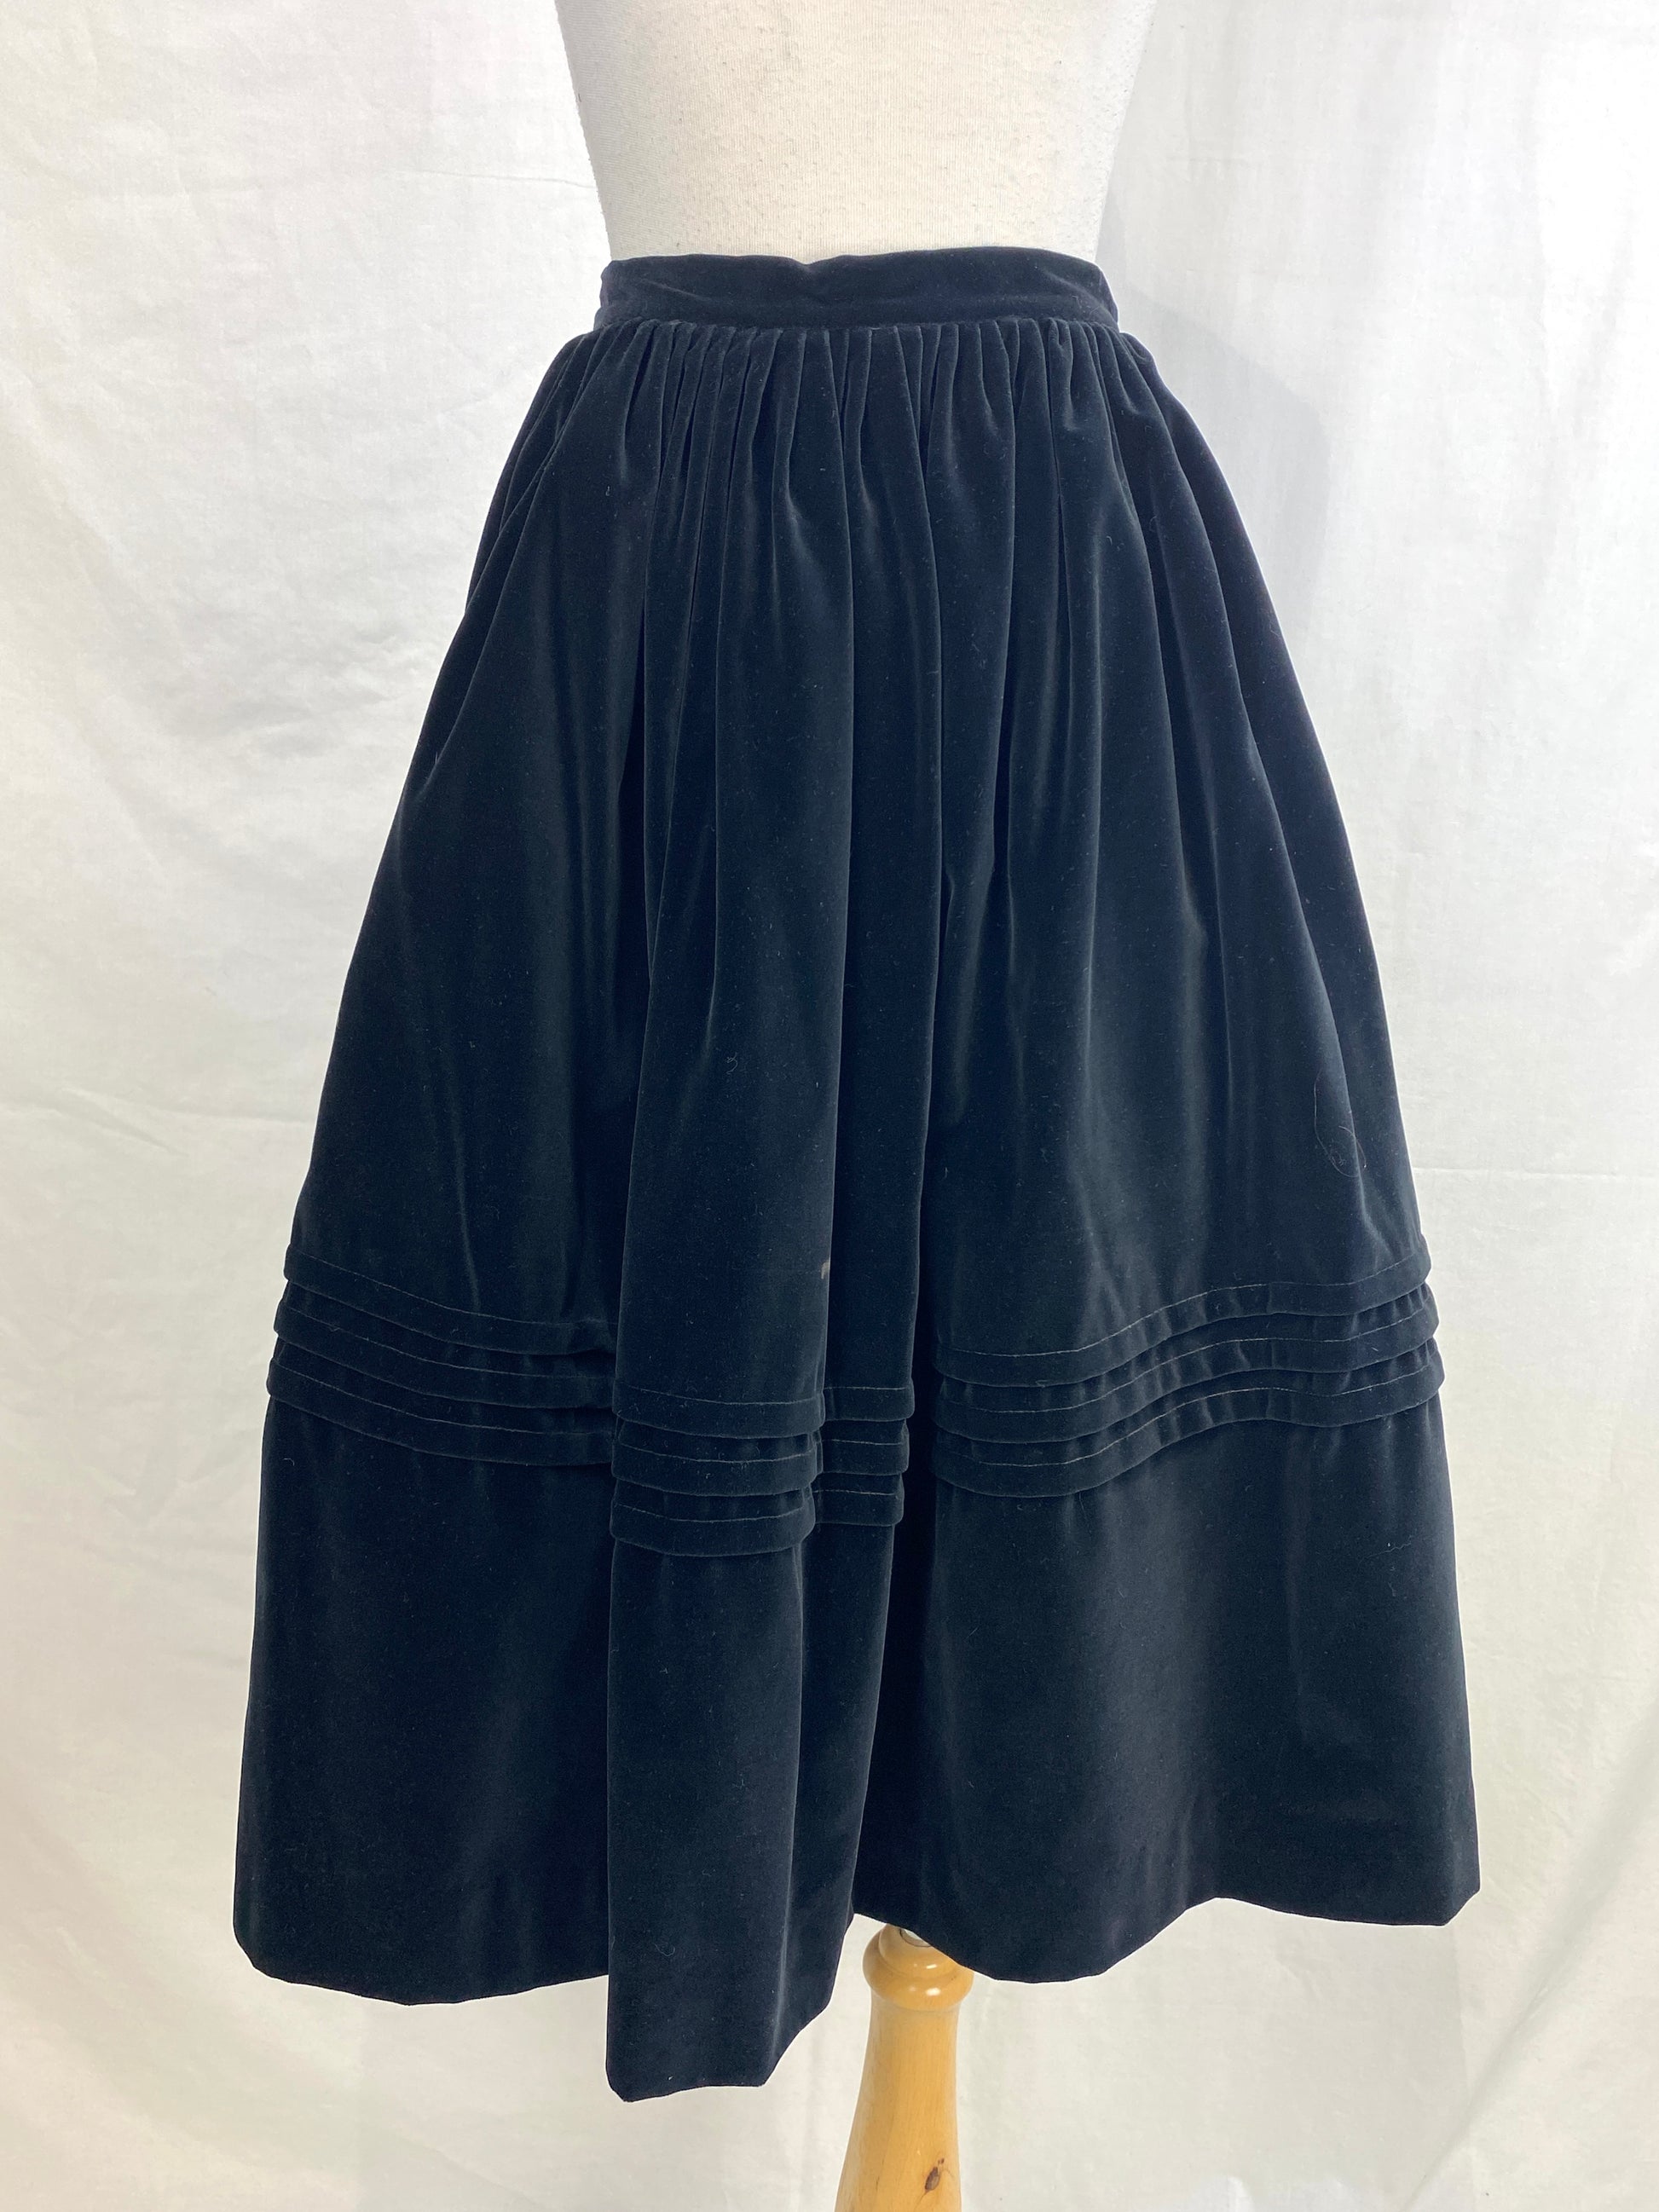 Vintage 1950s Black Velour Full Skirt, Medium